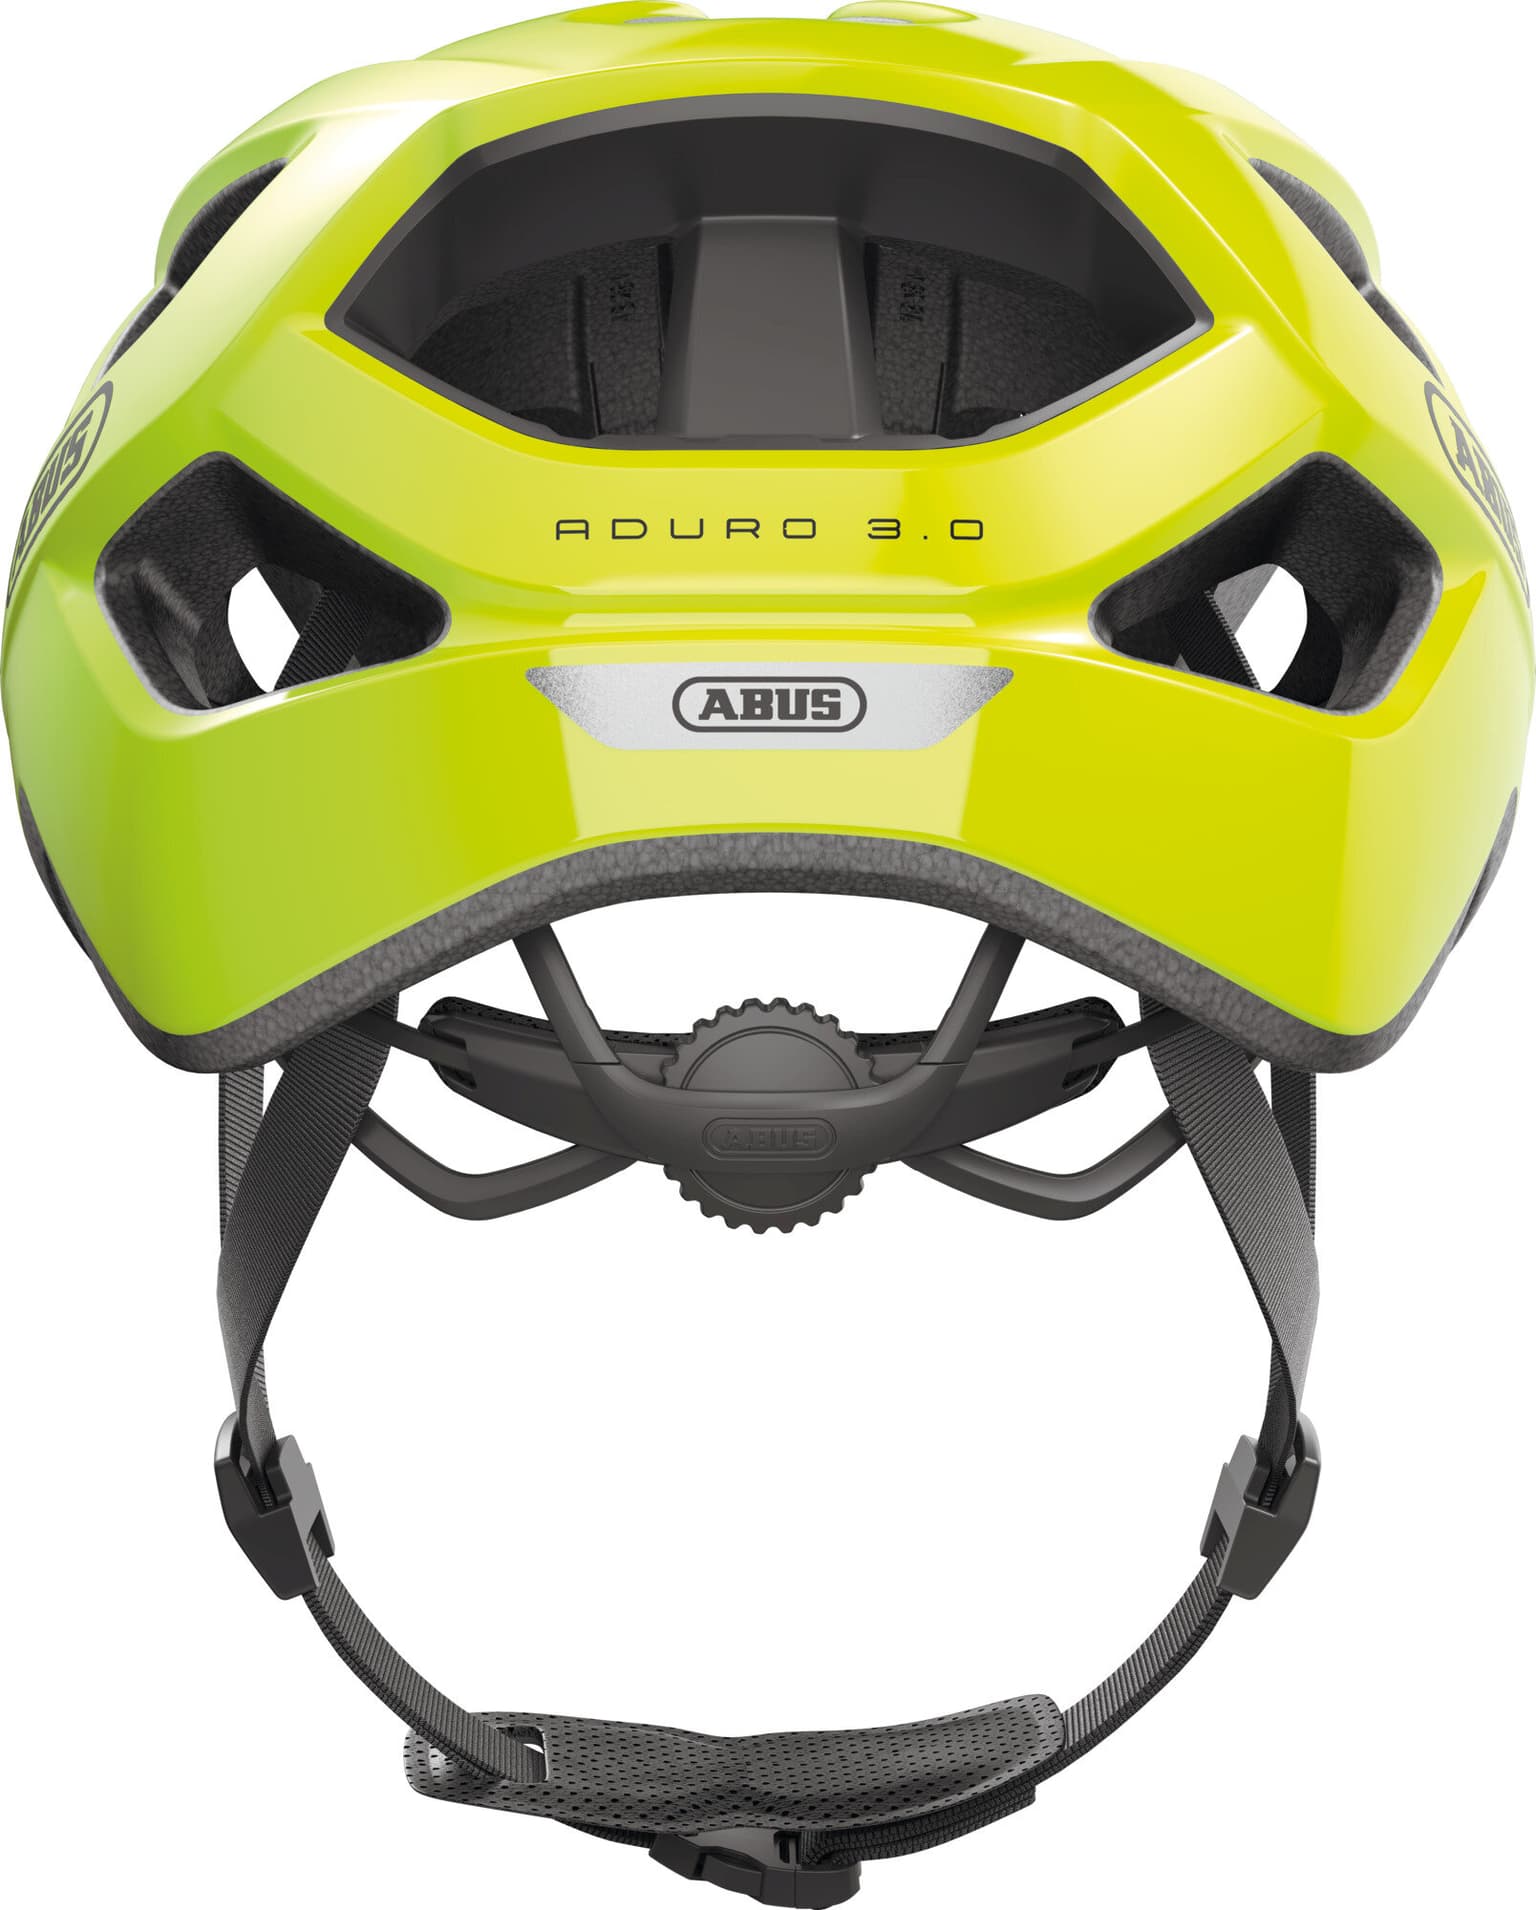 Abus Abus Aduro 3.0 Casco da bicicletta giallo-neon 5